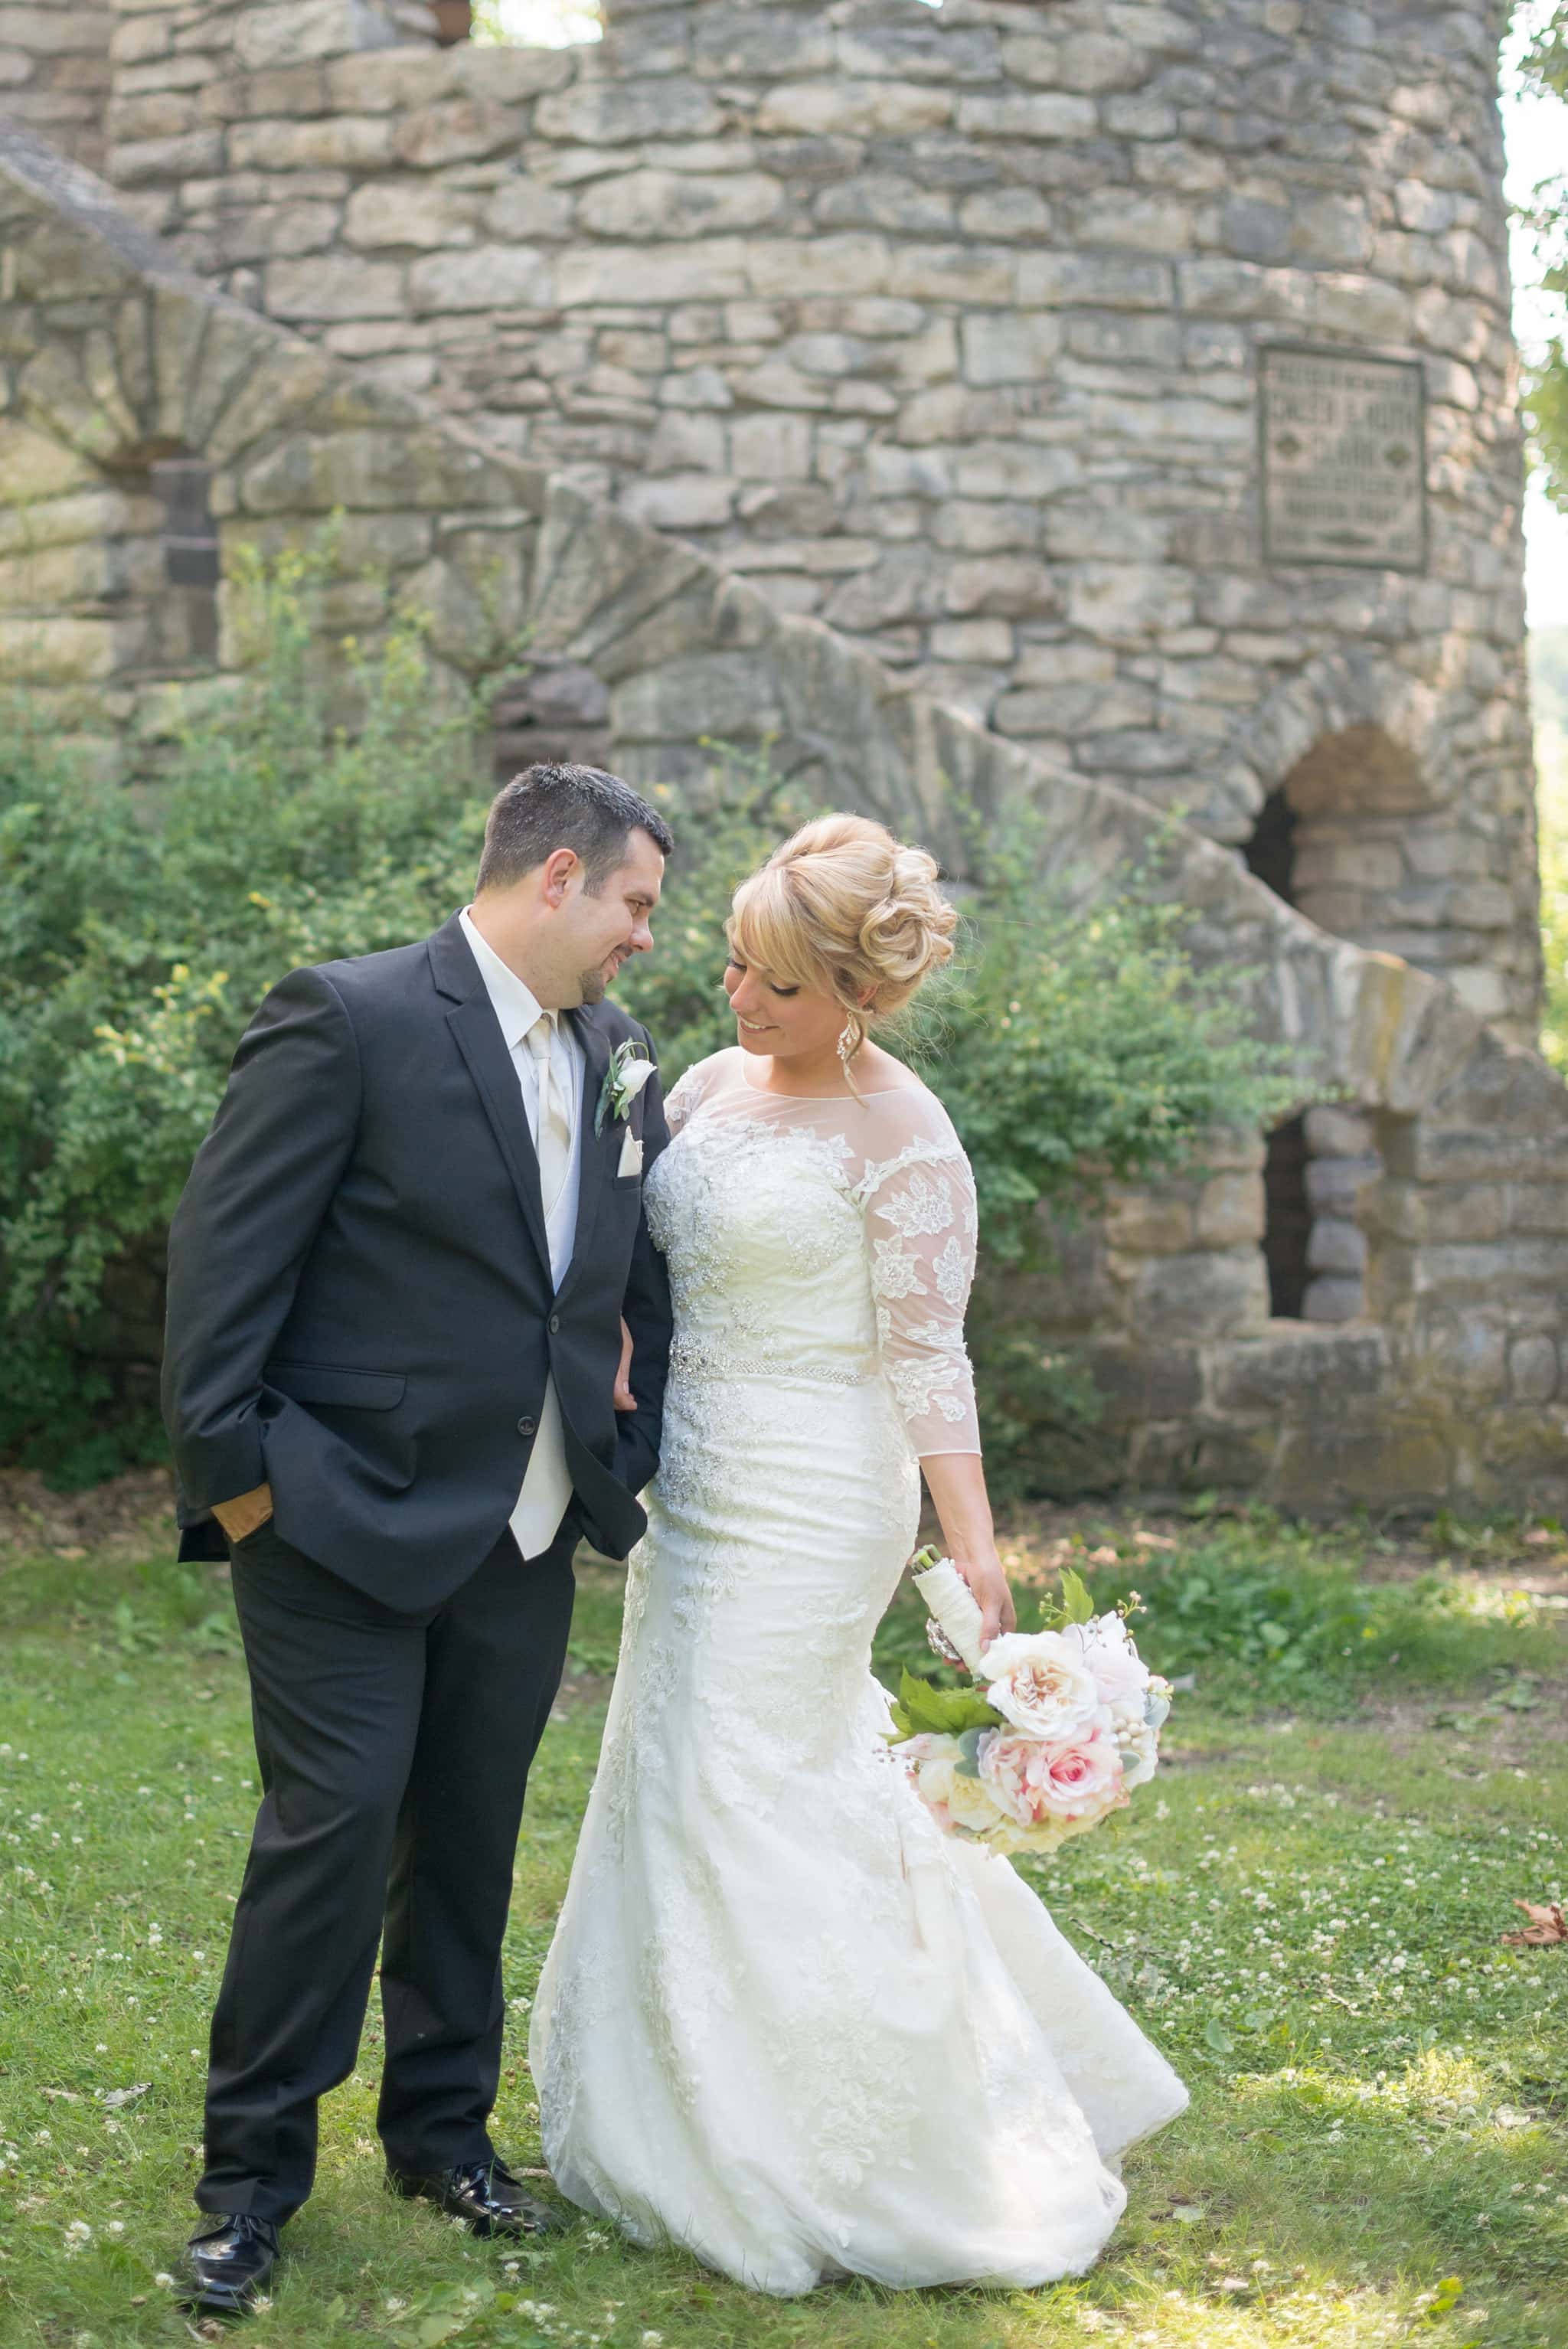 Lauren & Ryan | Winterset Iowa Wedding Photographer